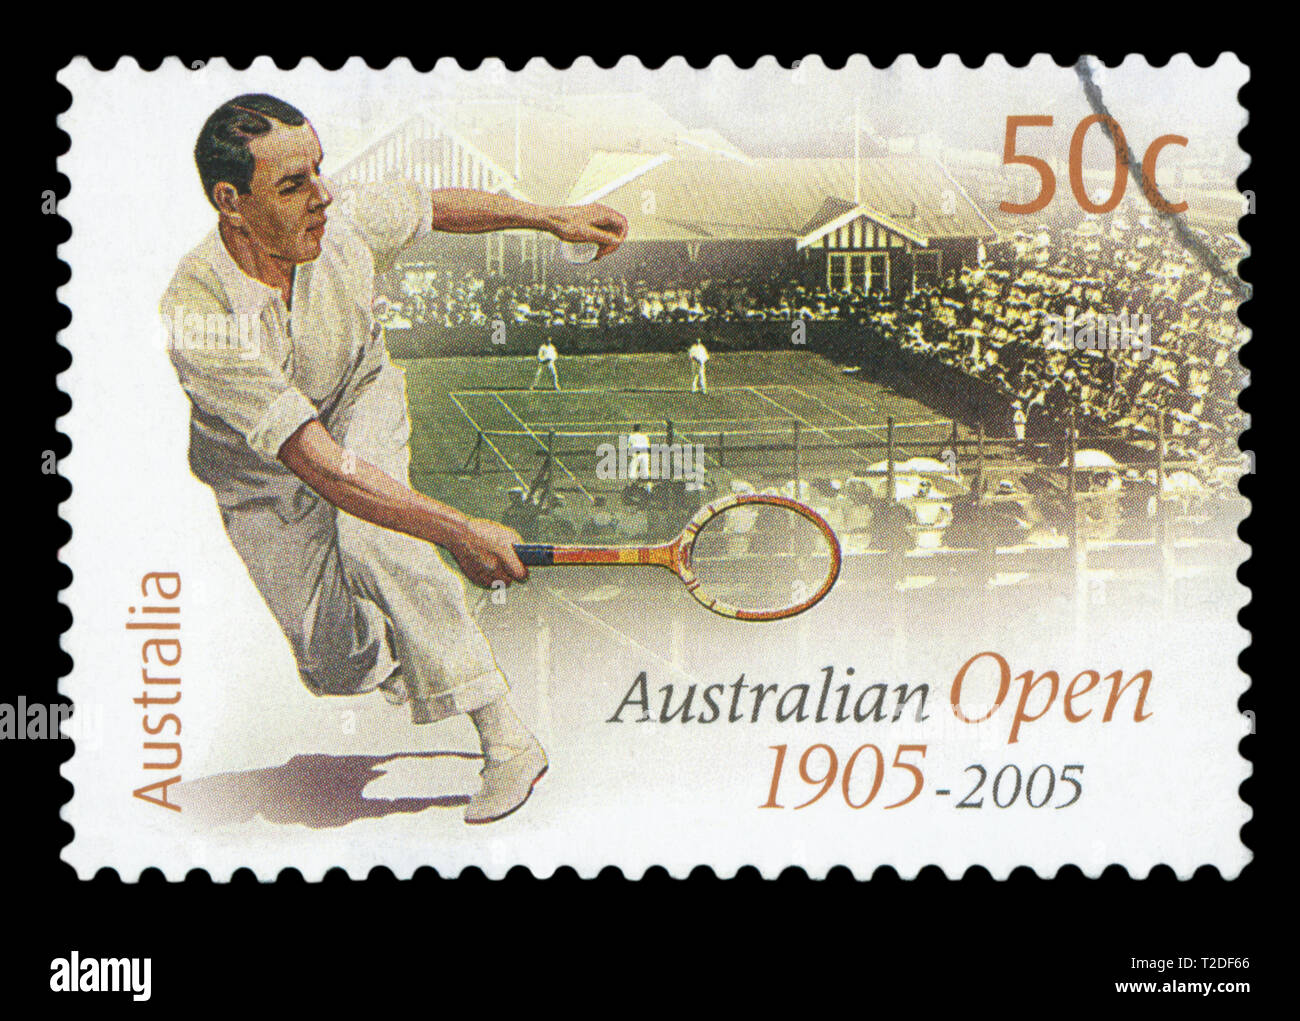 Australien - ca. 2005: einen gebrauchten Briefmarke aus Australien, symbolisiert die Geschichte der Australian Open 1905 - 2005, ca. 2005. Stockfoto